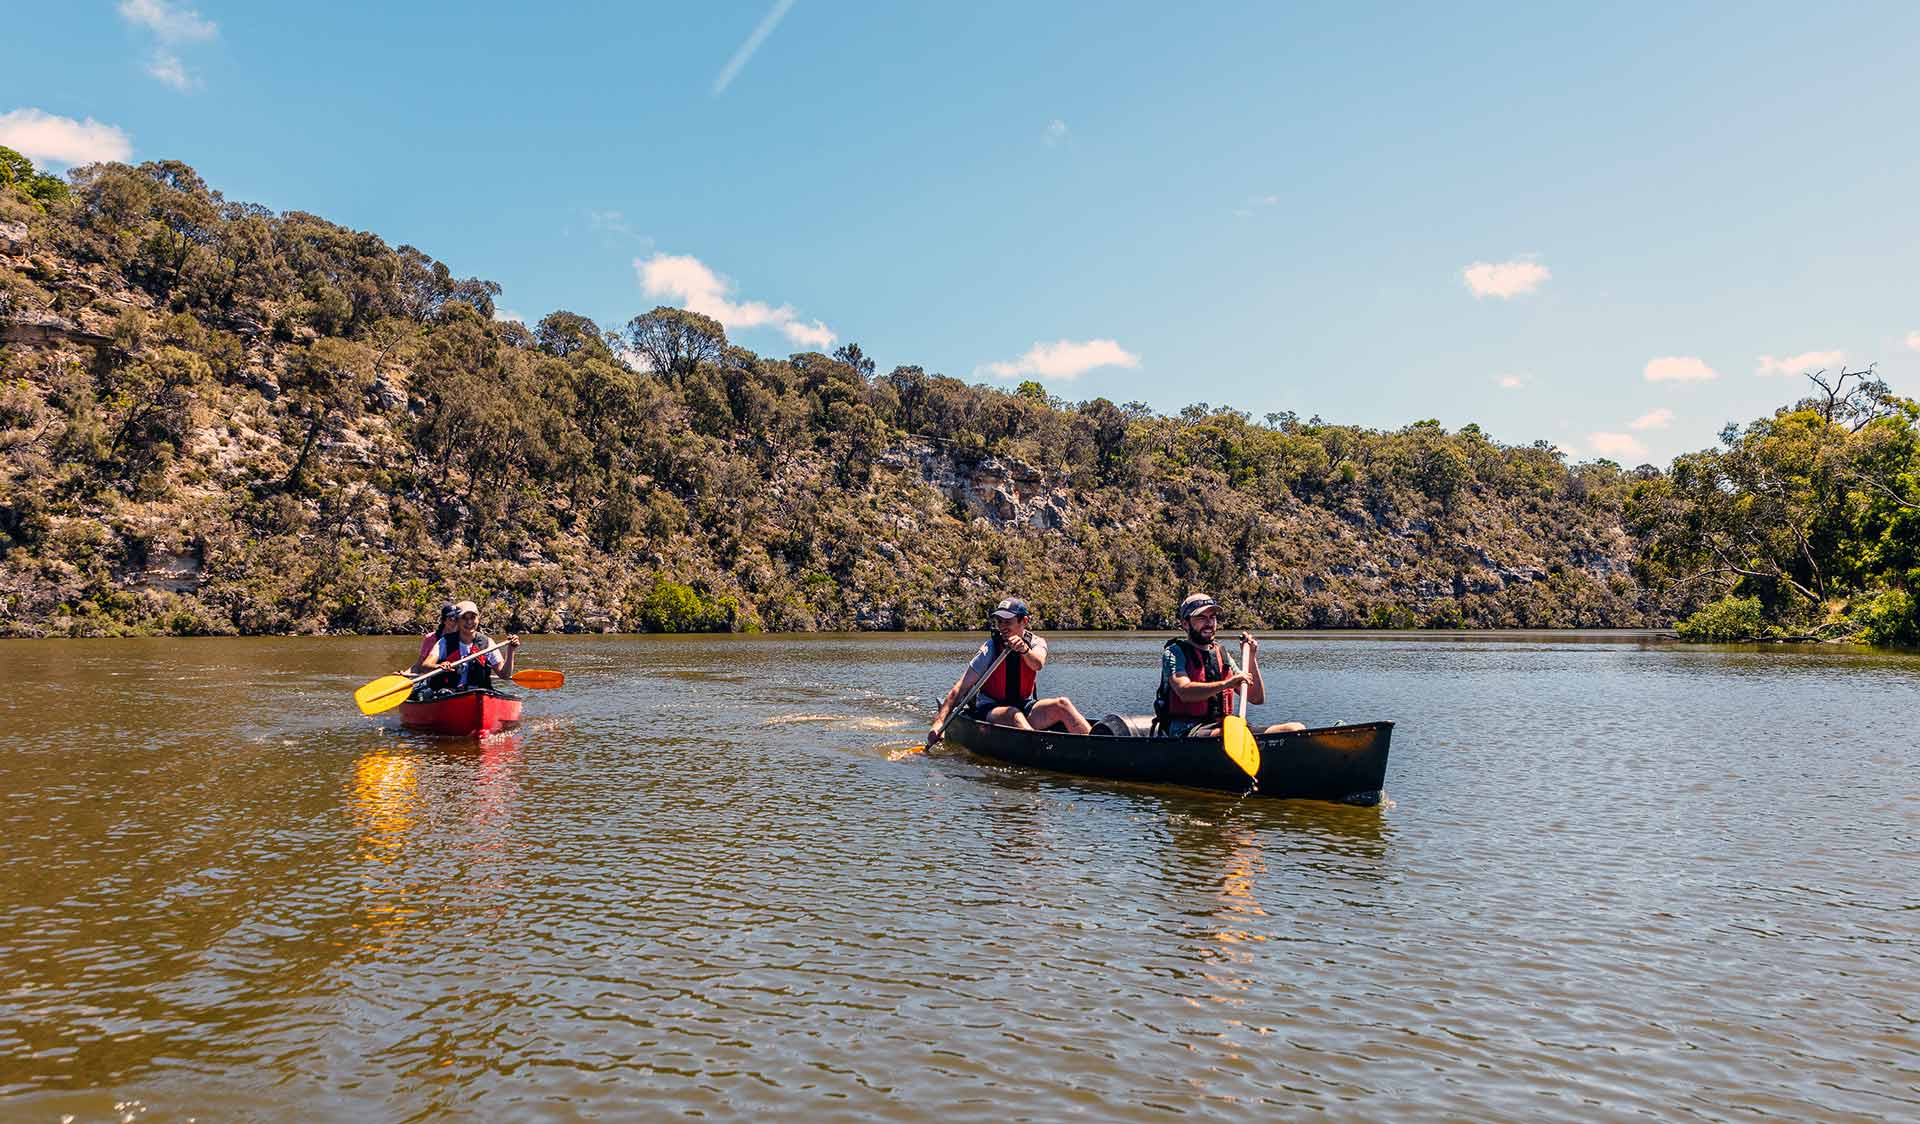 Four friend canoe down the Glenelg River in the Lower Glenelg National Park.